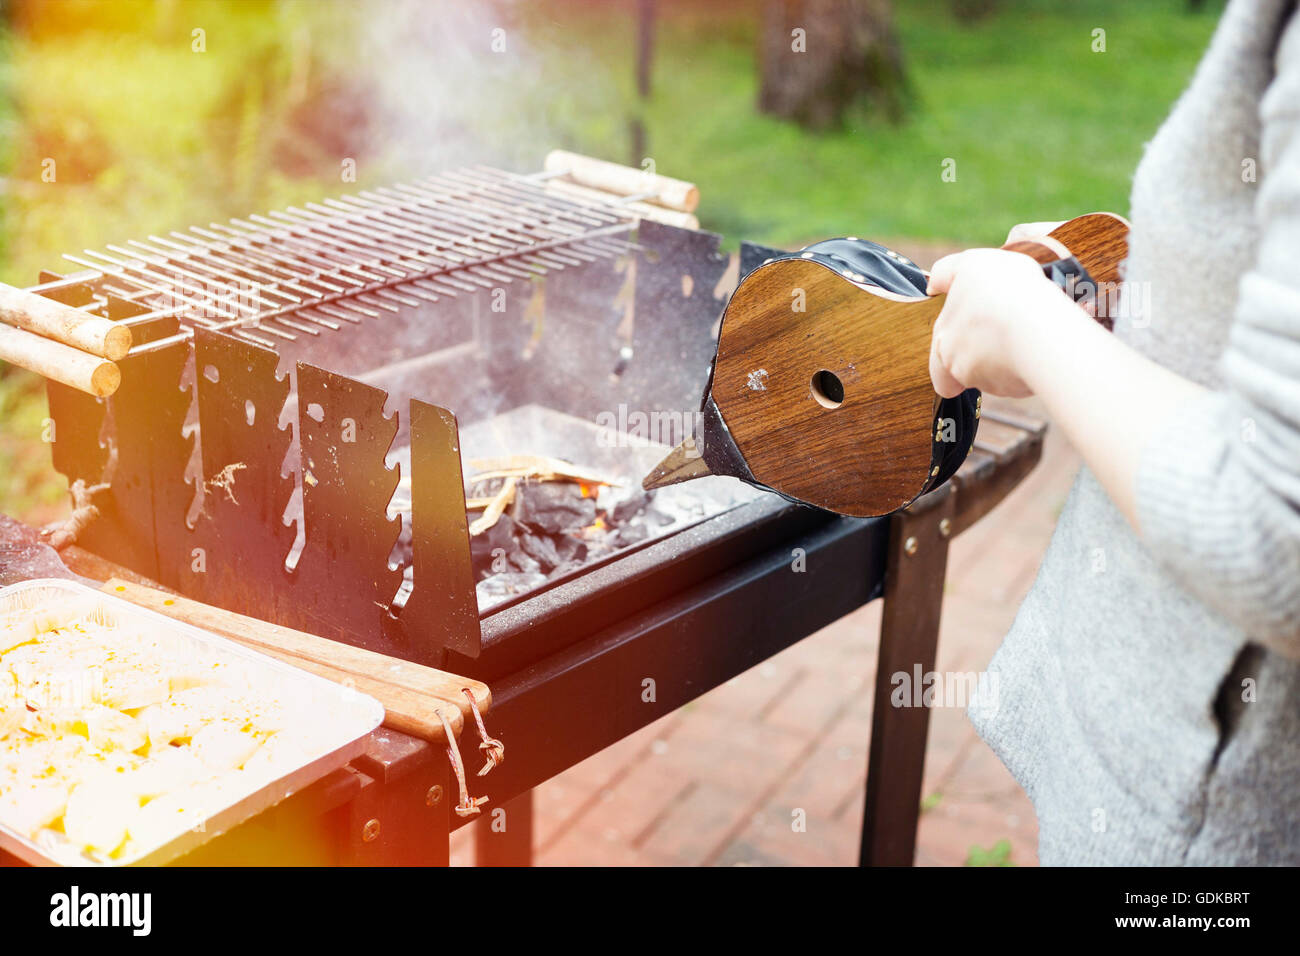 Eine Sommer-Grillparty vorbereiten Holzkohlegrill. Lifestyle-Bild, natürliche leichte, flache Schärfentiefe, leichte Undichtigkeit. Stockfoto